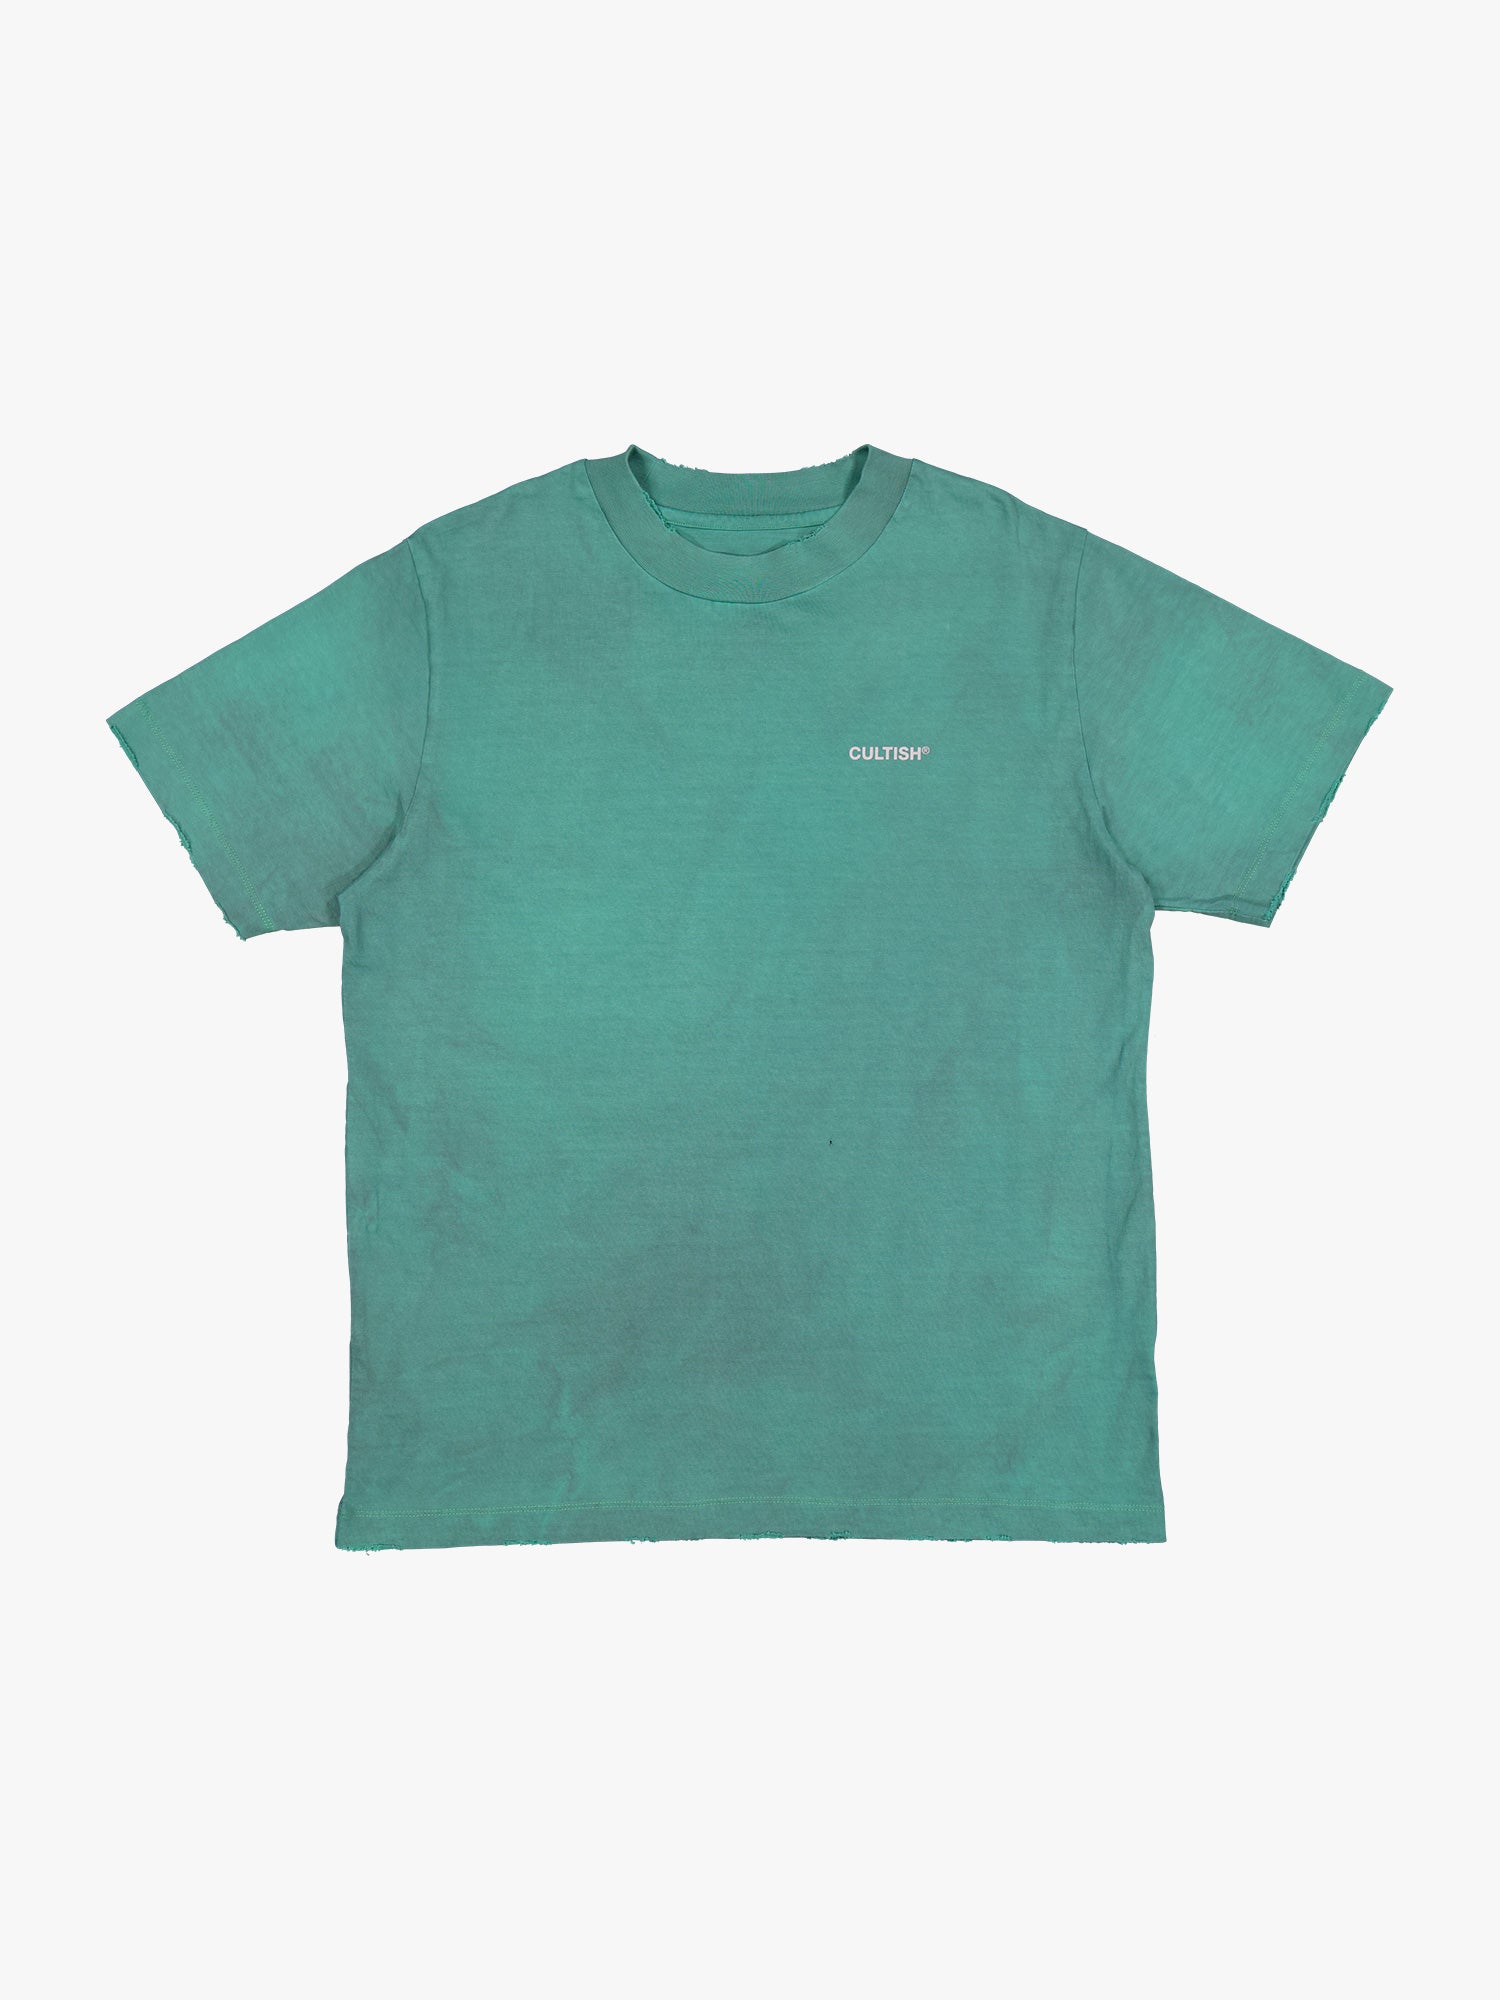 ⓔ Staple T-Shirt